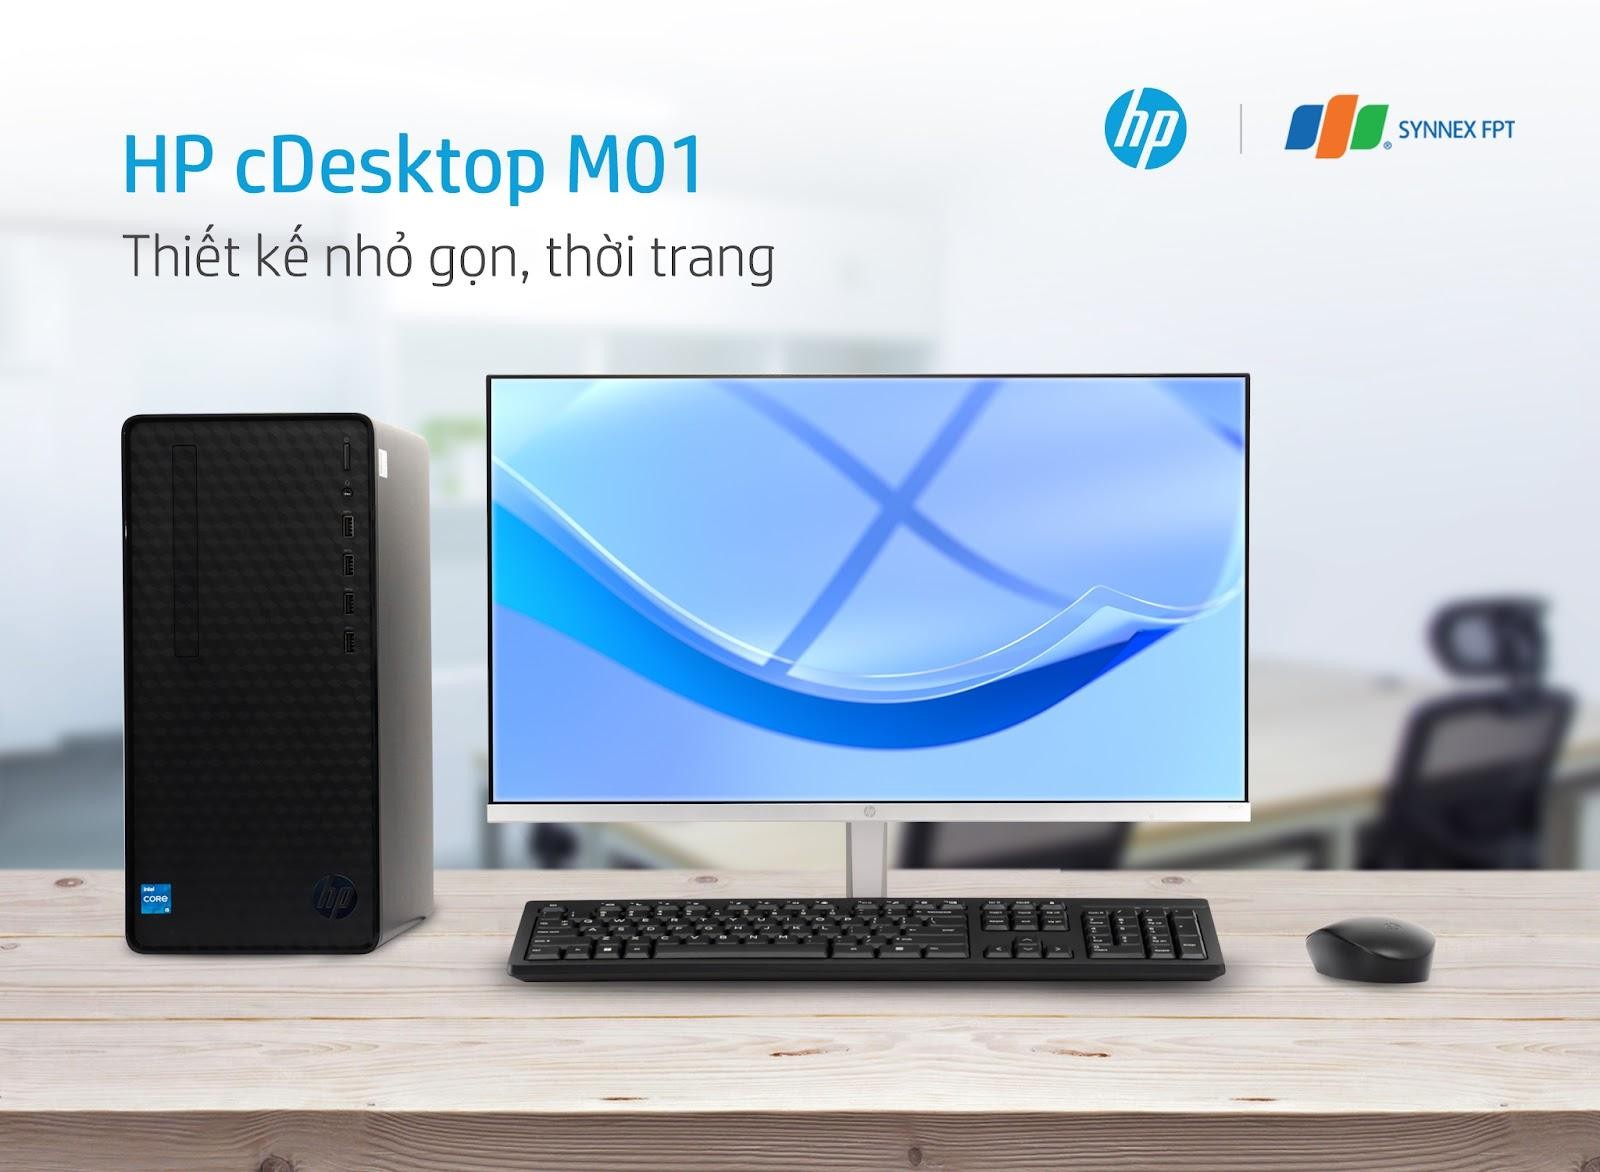 HP cDesktop M01: Thiết kế tối giản, đa dạng kết nối